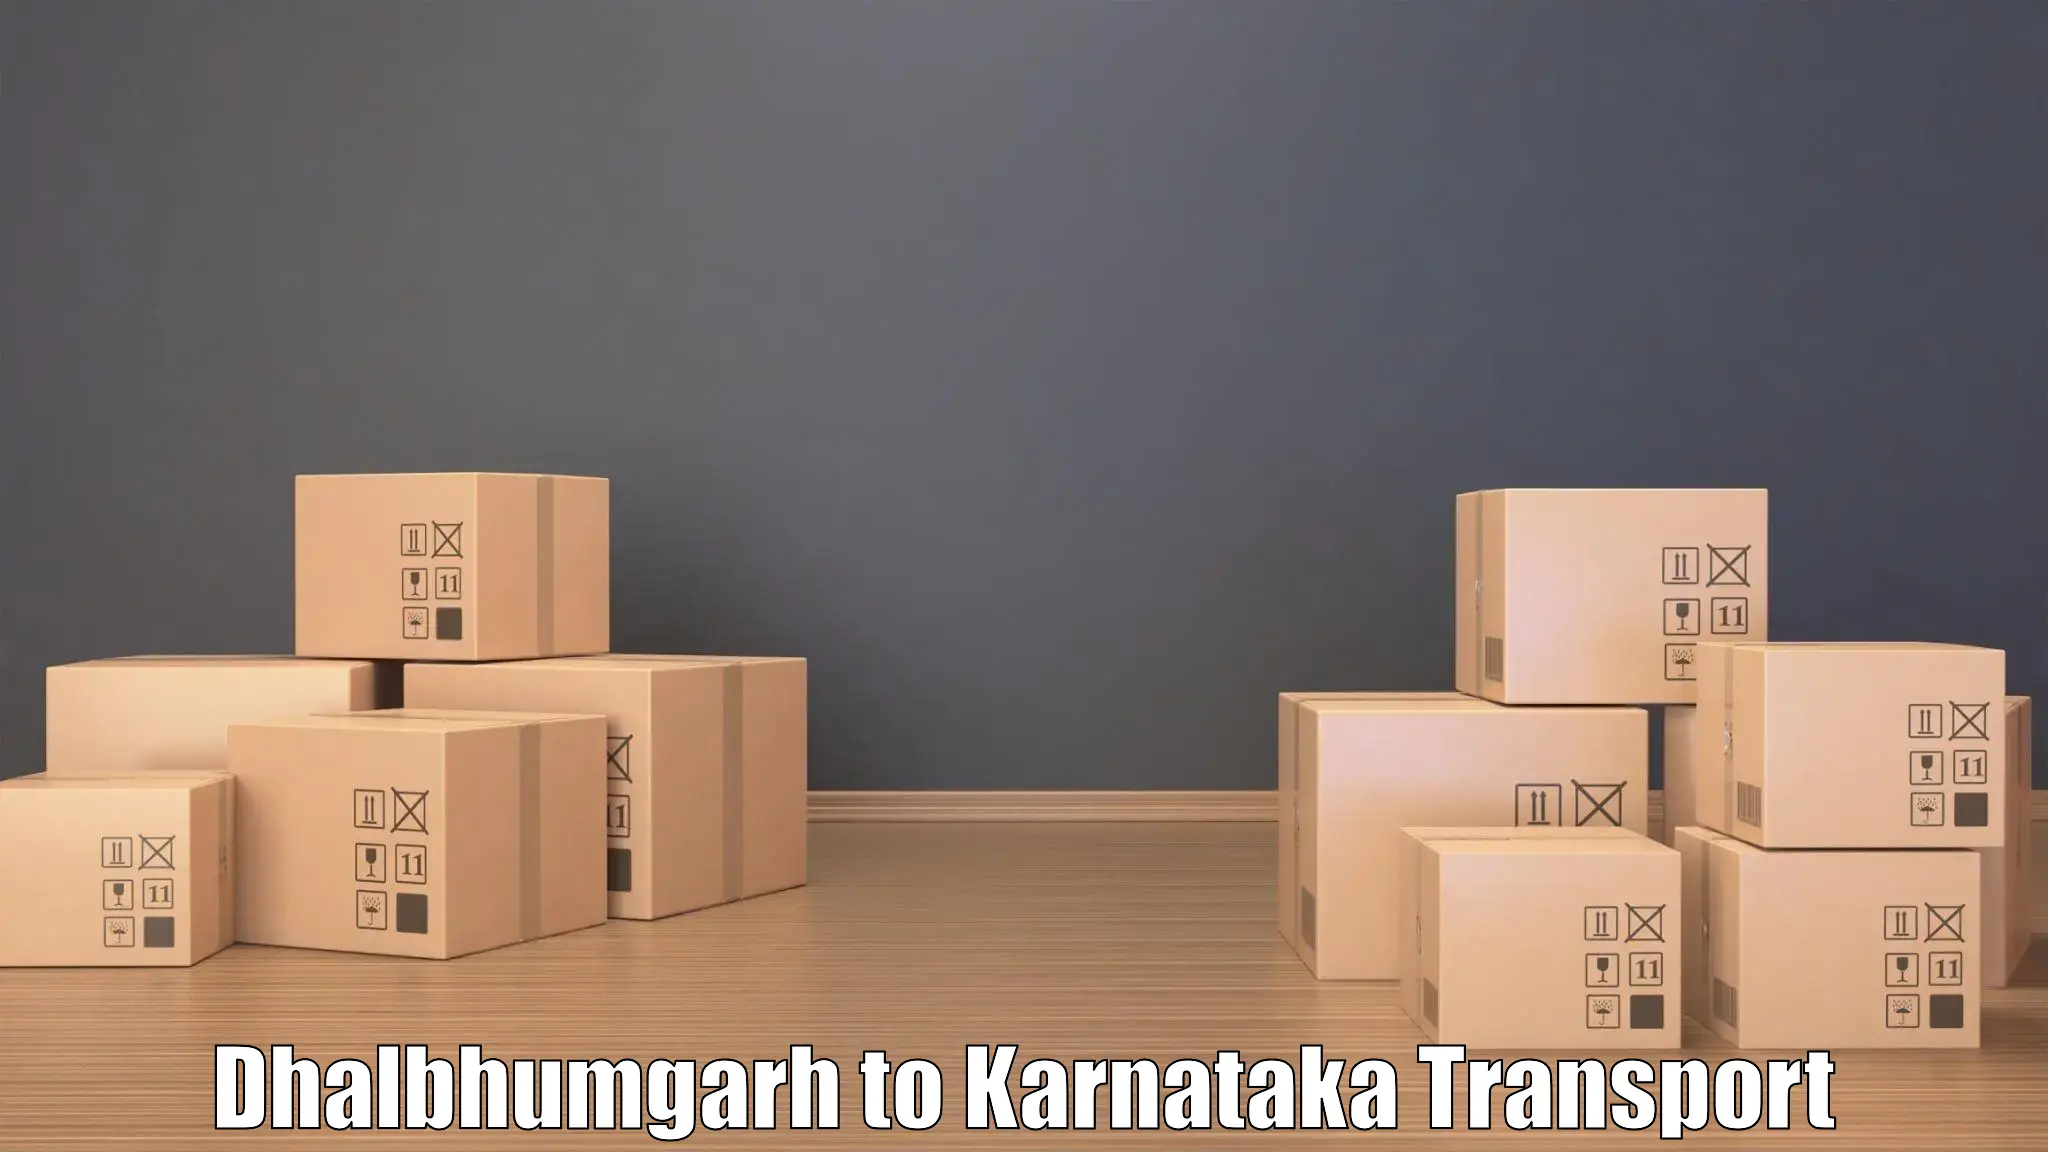 Interstate goods transport Dhalbhumgarh to Karnataka